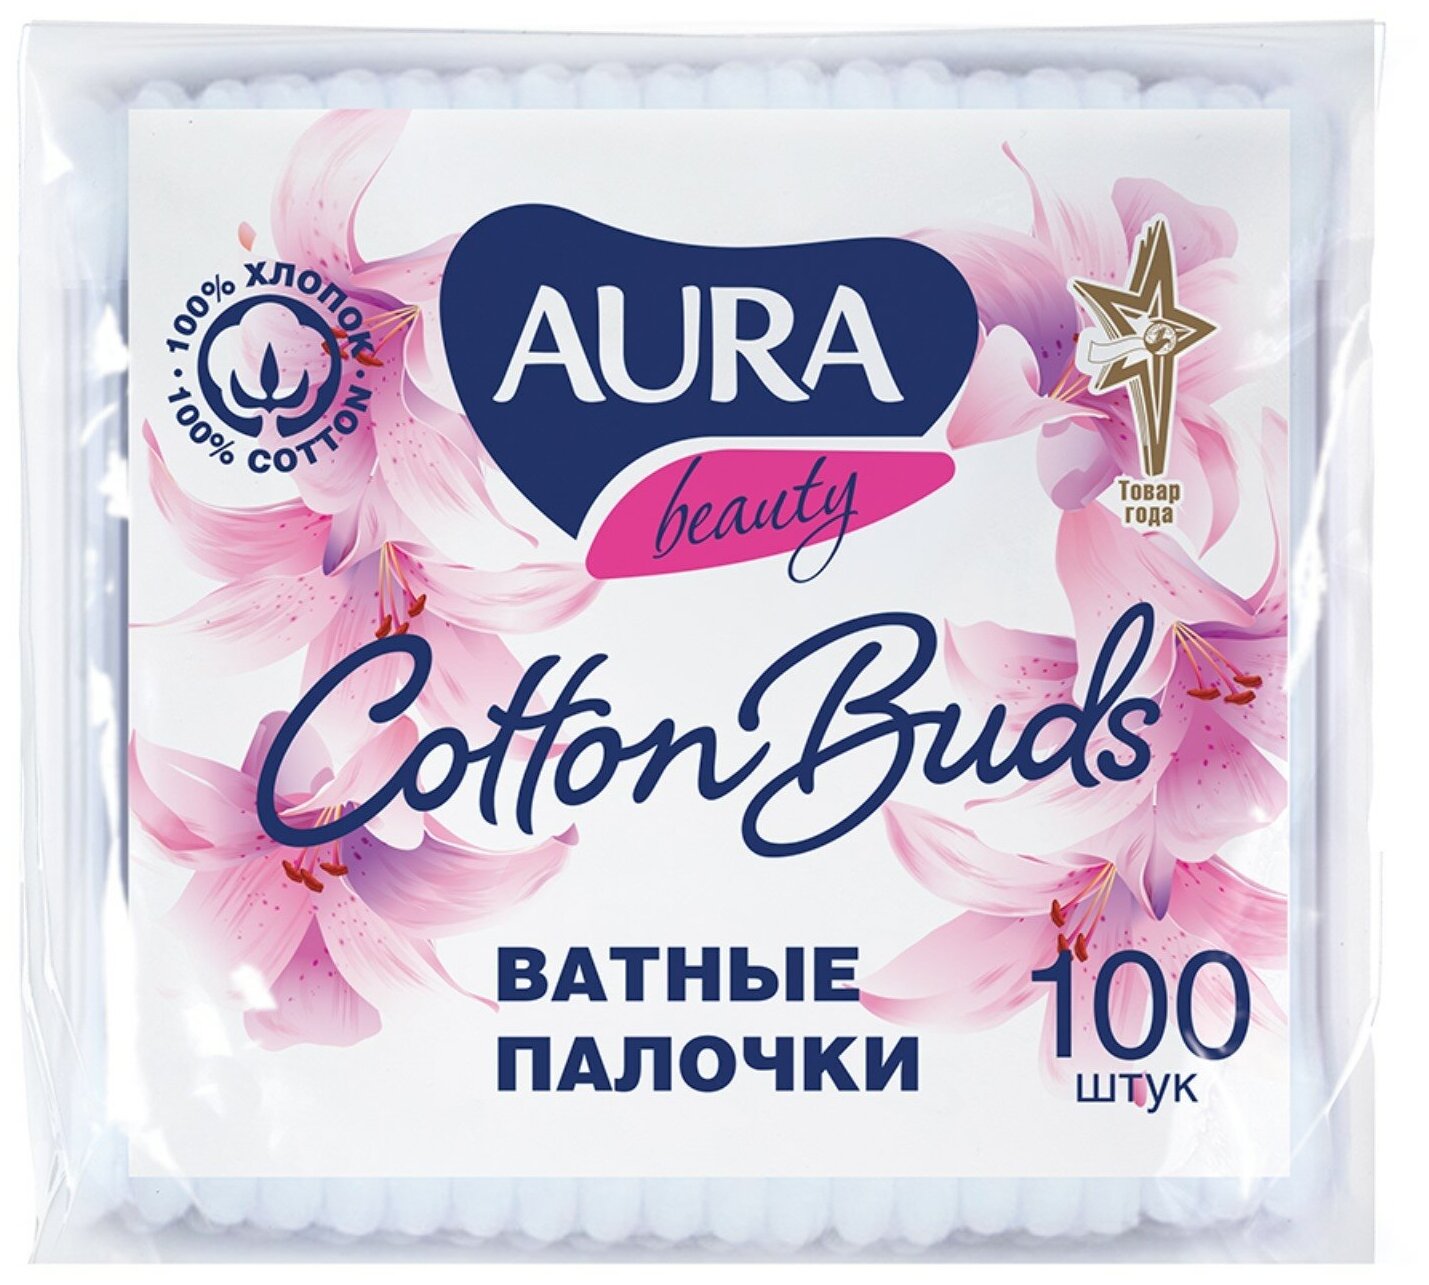   Aura Beauty Cotton buds, 100 ., 